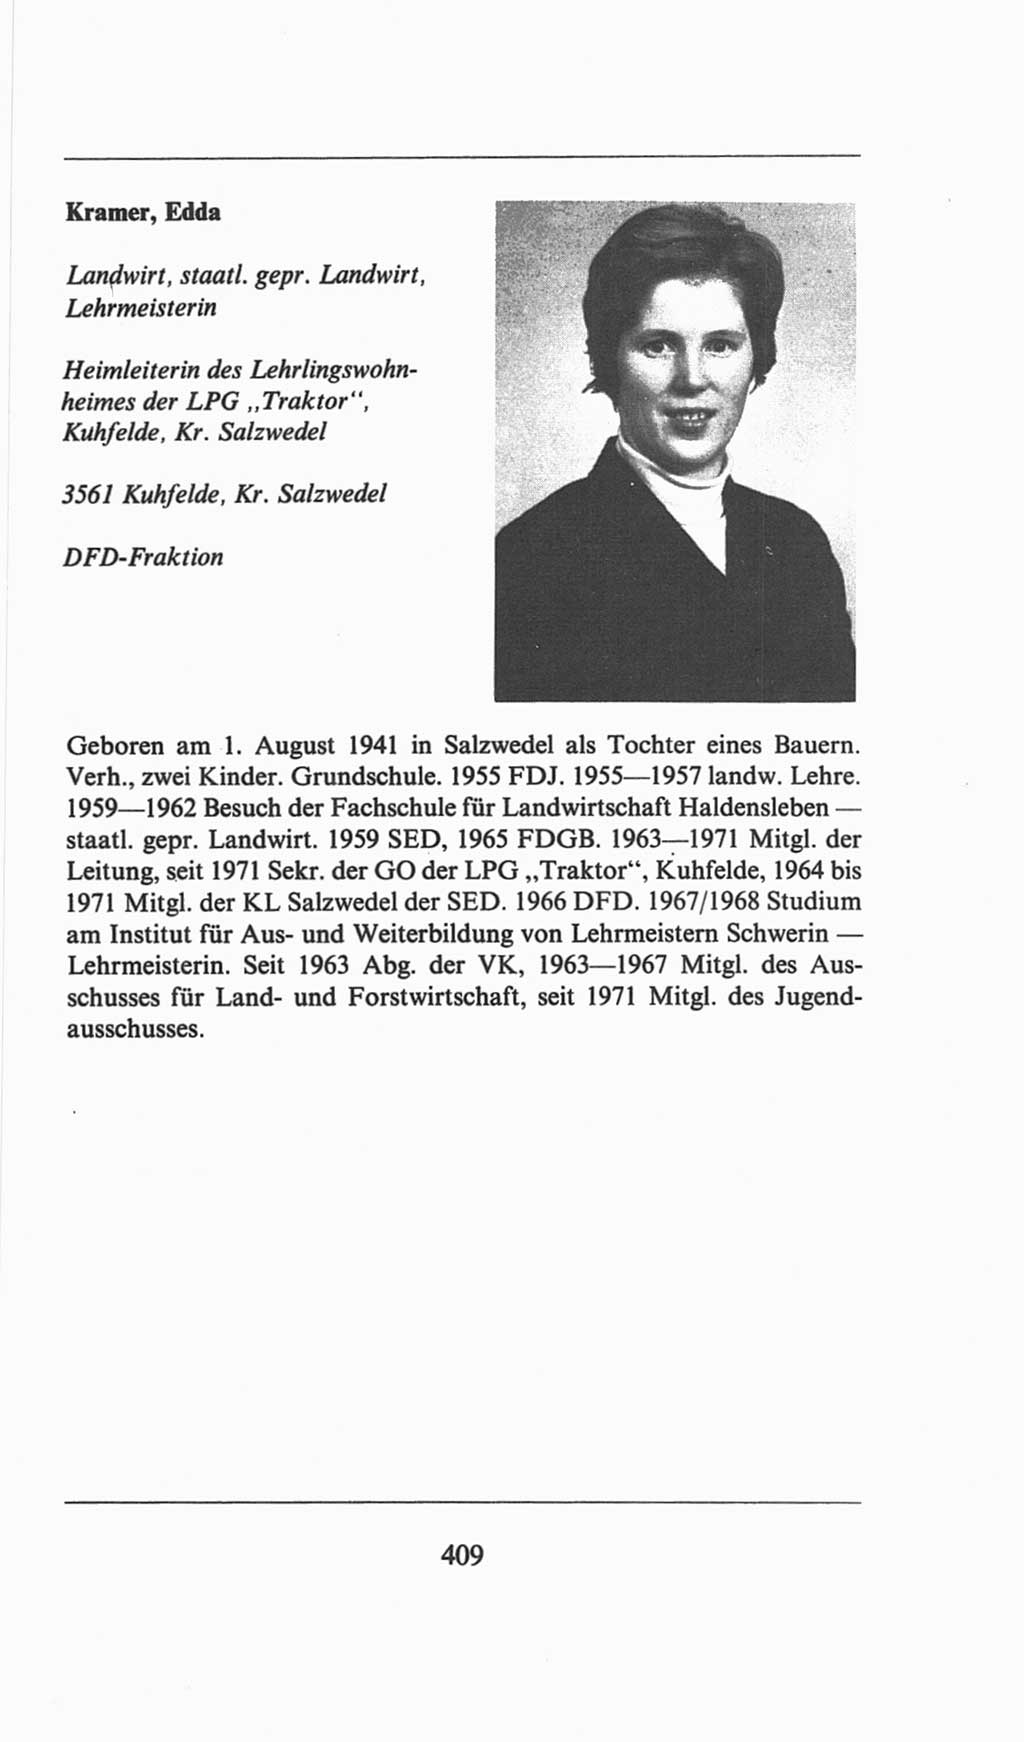 Volkskammer (VK) der Deutschen Demokratischen Republik (DDR), 6. Wahlperiode 1971-1976, Seite 409 (VK. DDR 6. WP. 1971-1976, S. 409)